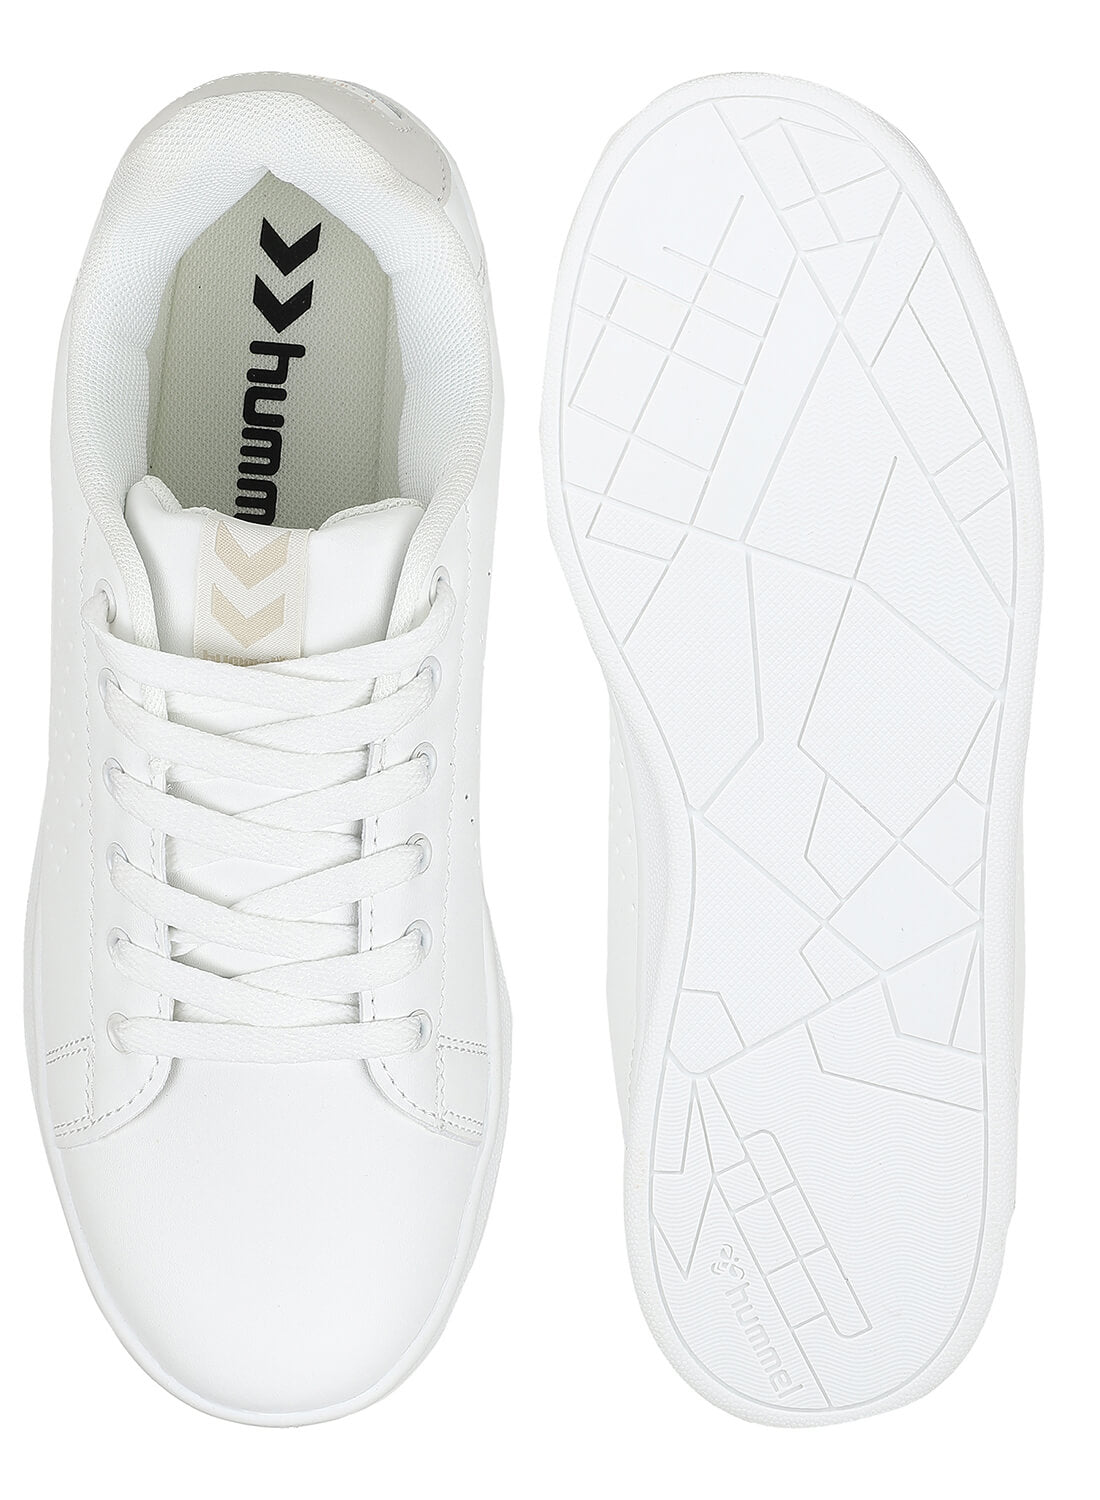 Busan White Sneaker for Women